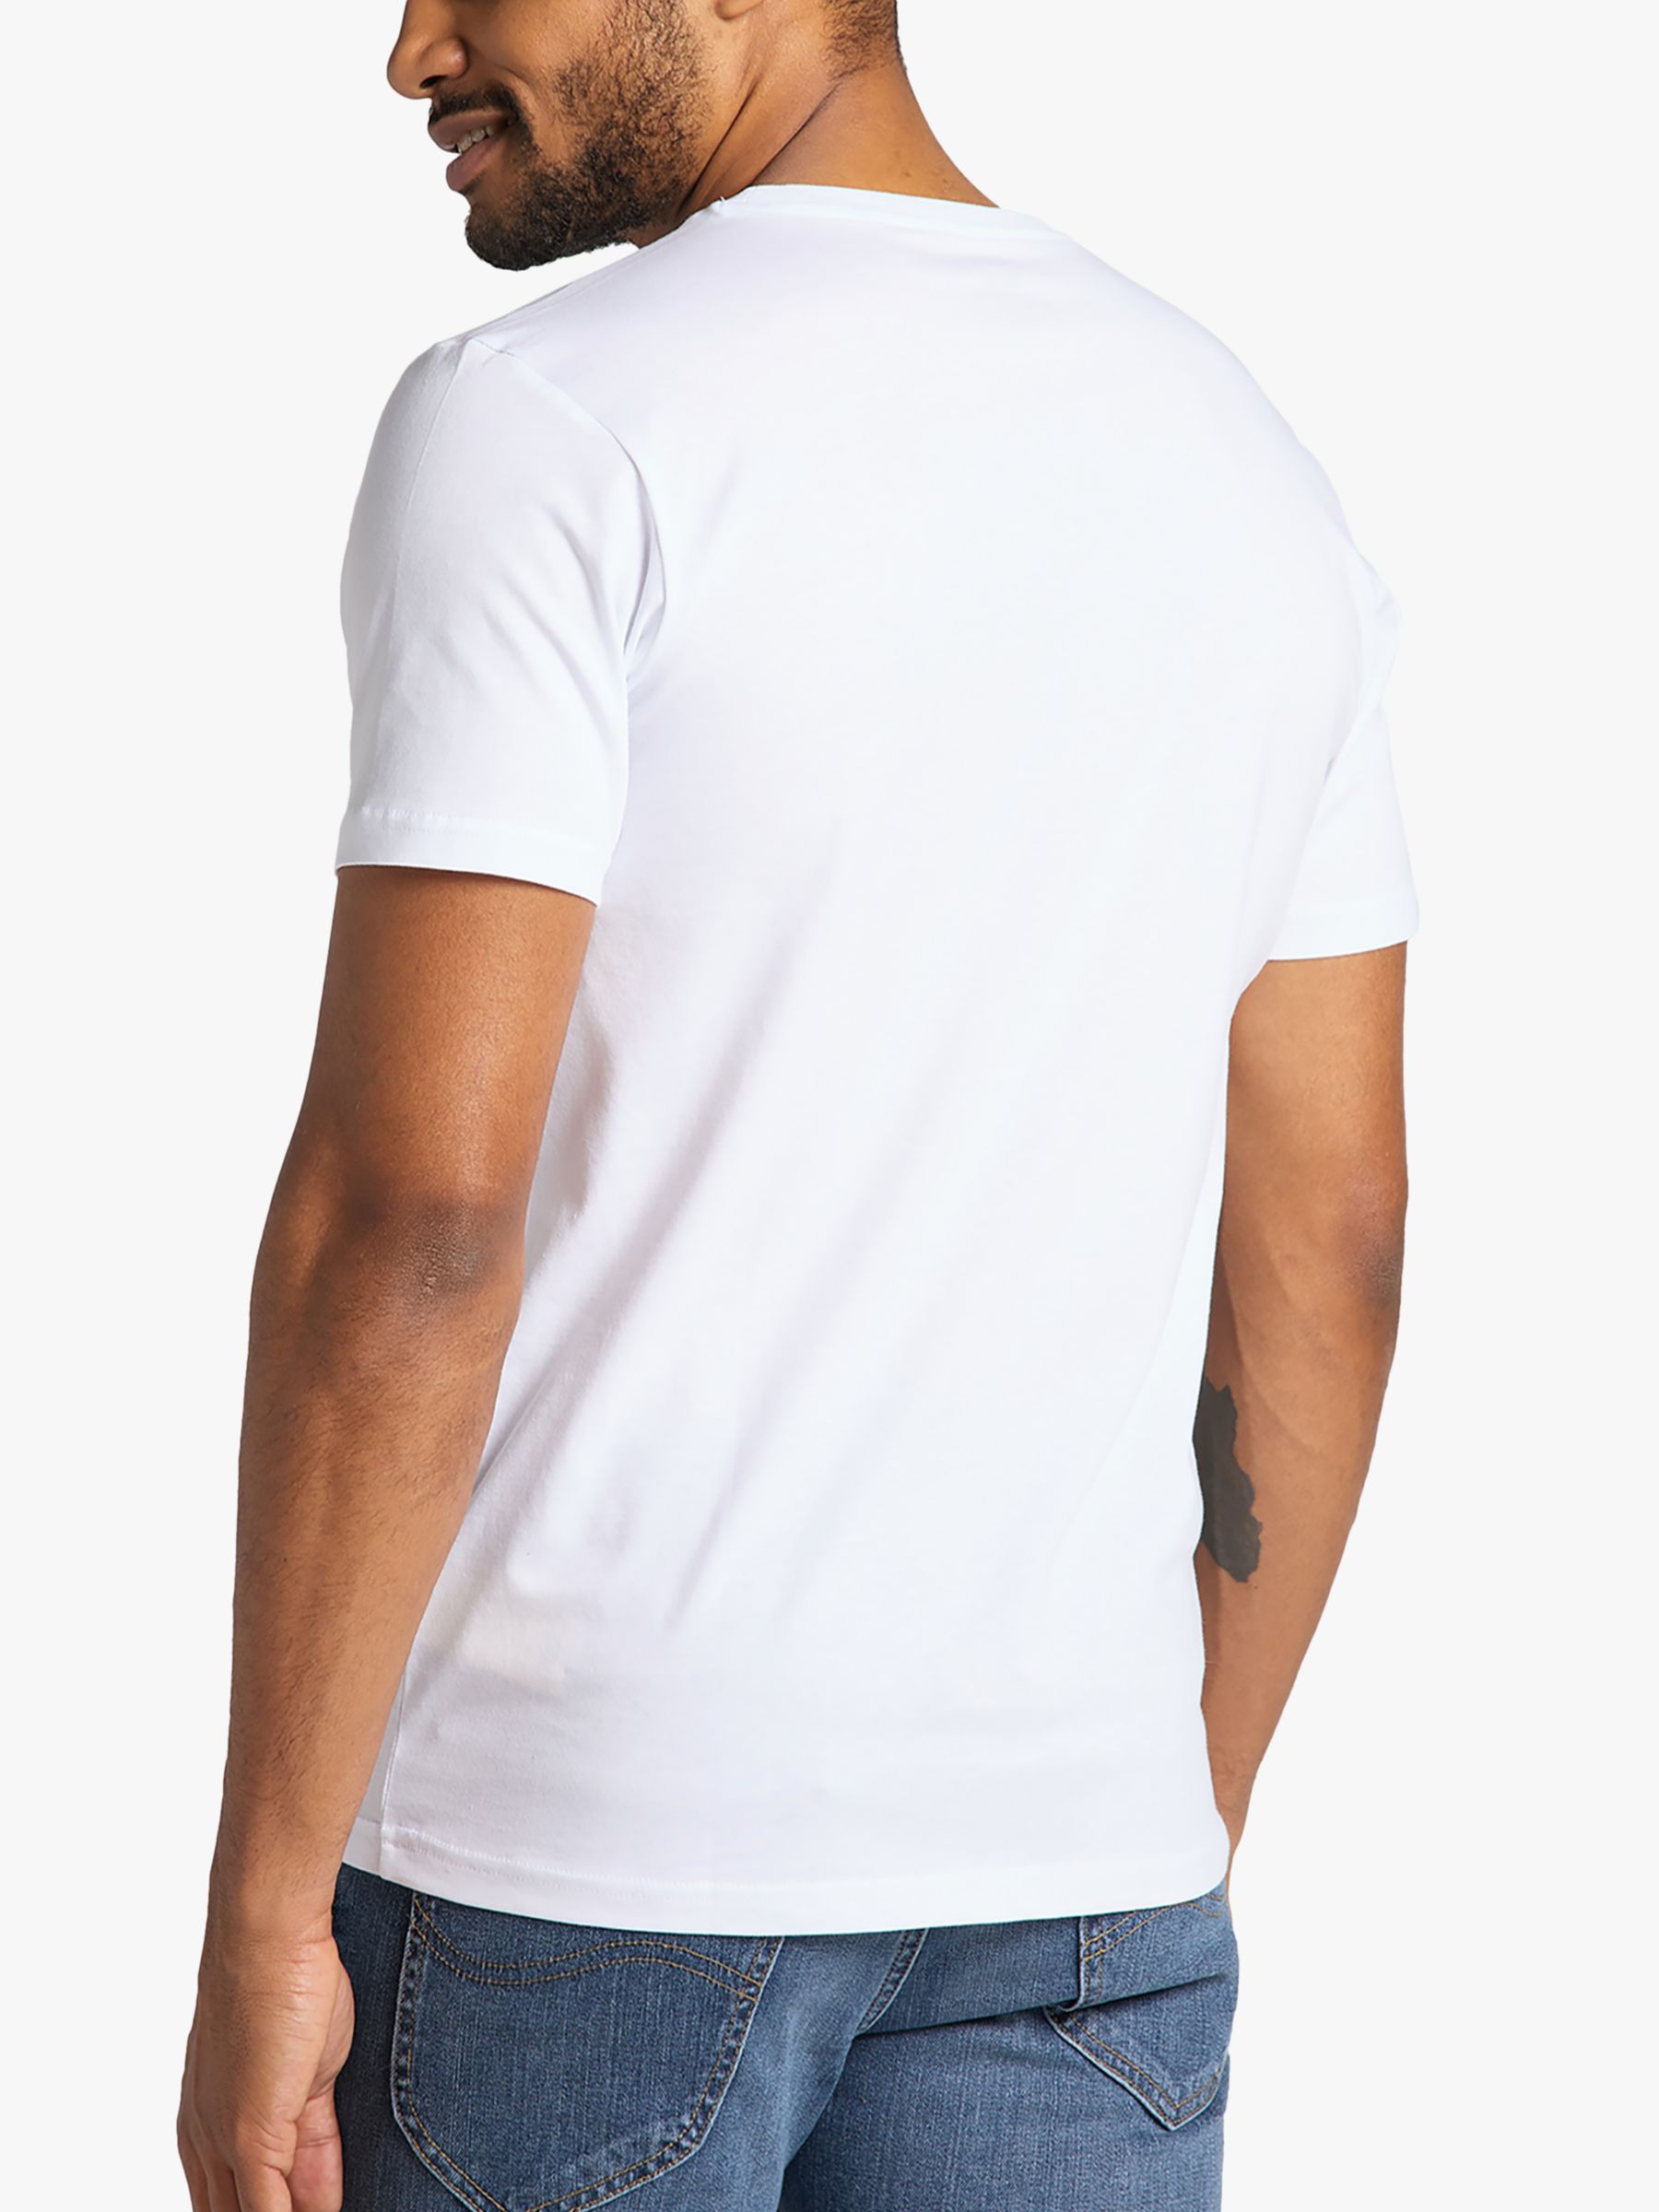 Lee Regular Fit Cotton Large Logo T-Shirt, White, S